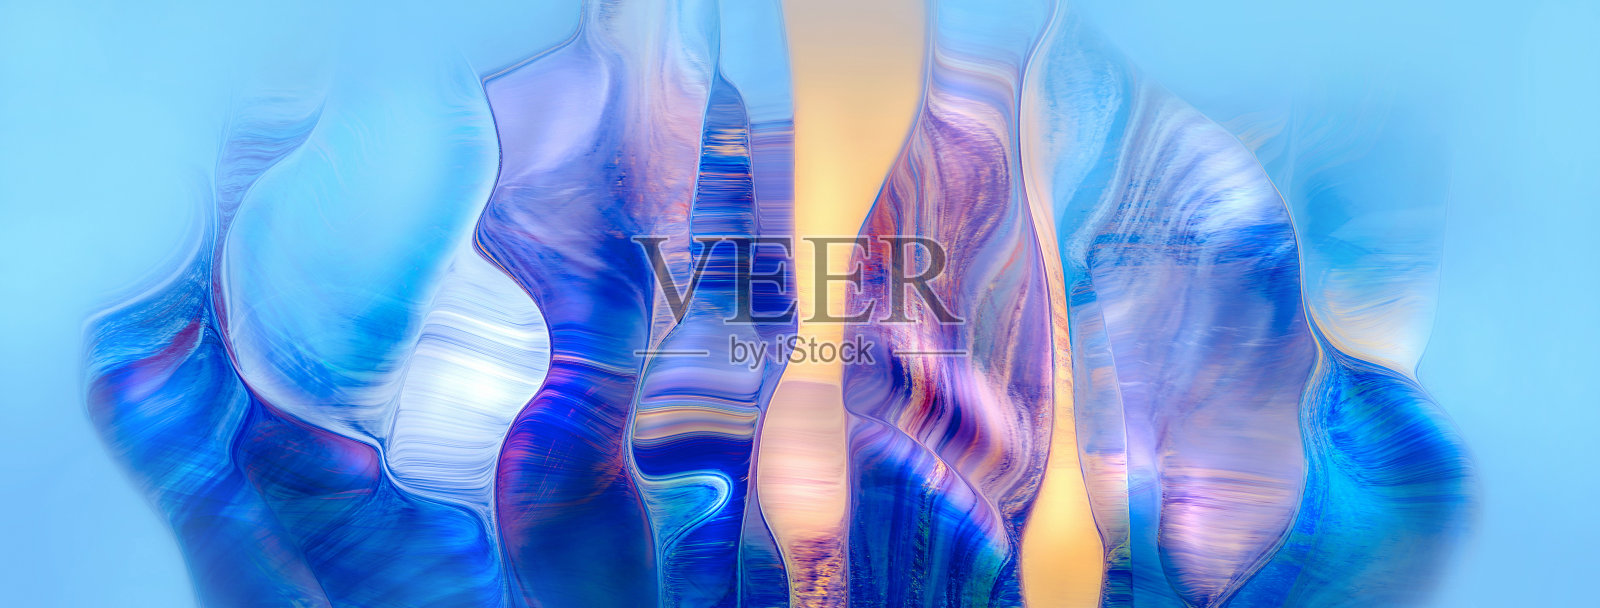 抽象的蓝色和紫色动态背景。未来的漩涡形状。插画图片素材